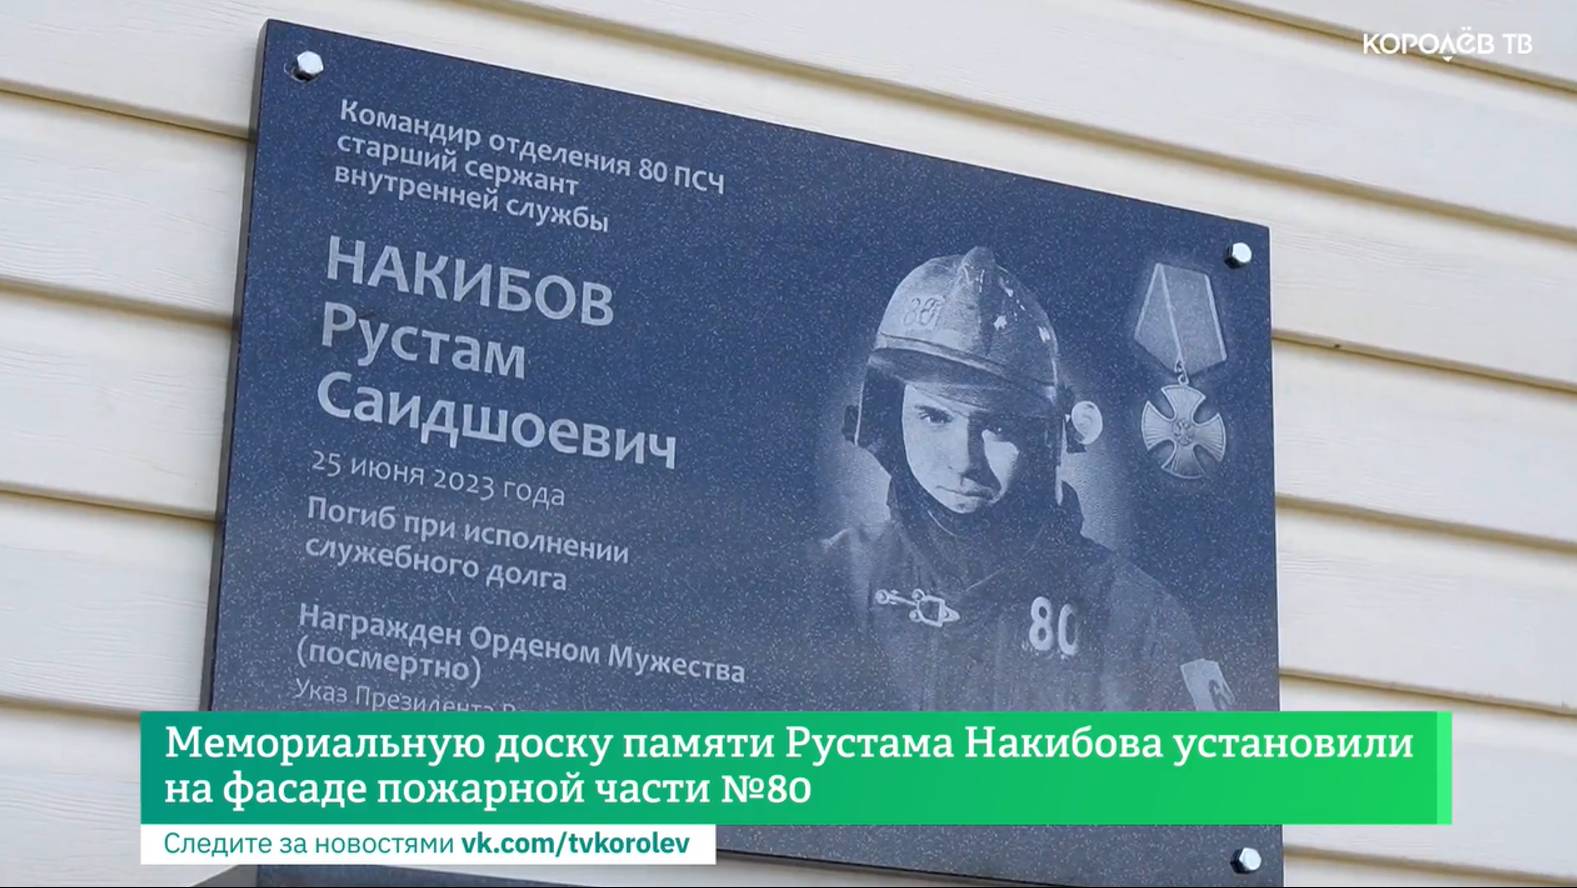 Мемориальную доску памяти Рустама Накибова установили на фасаде пожарной части №80